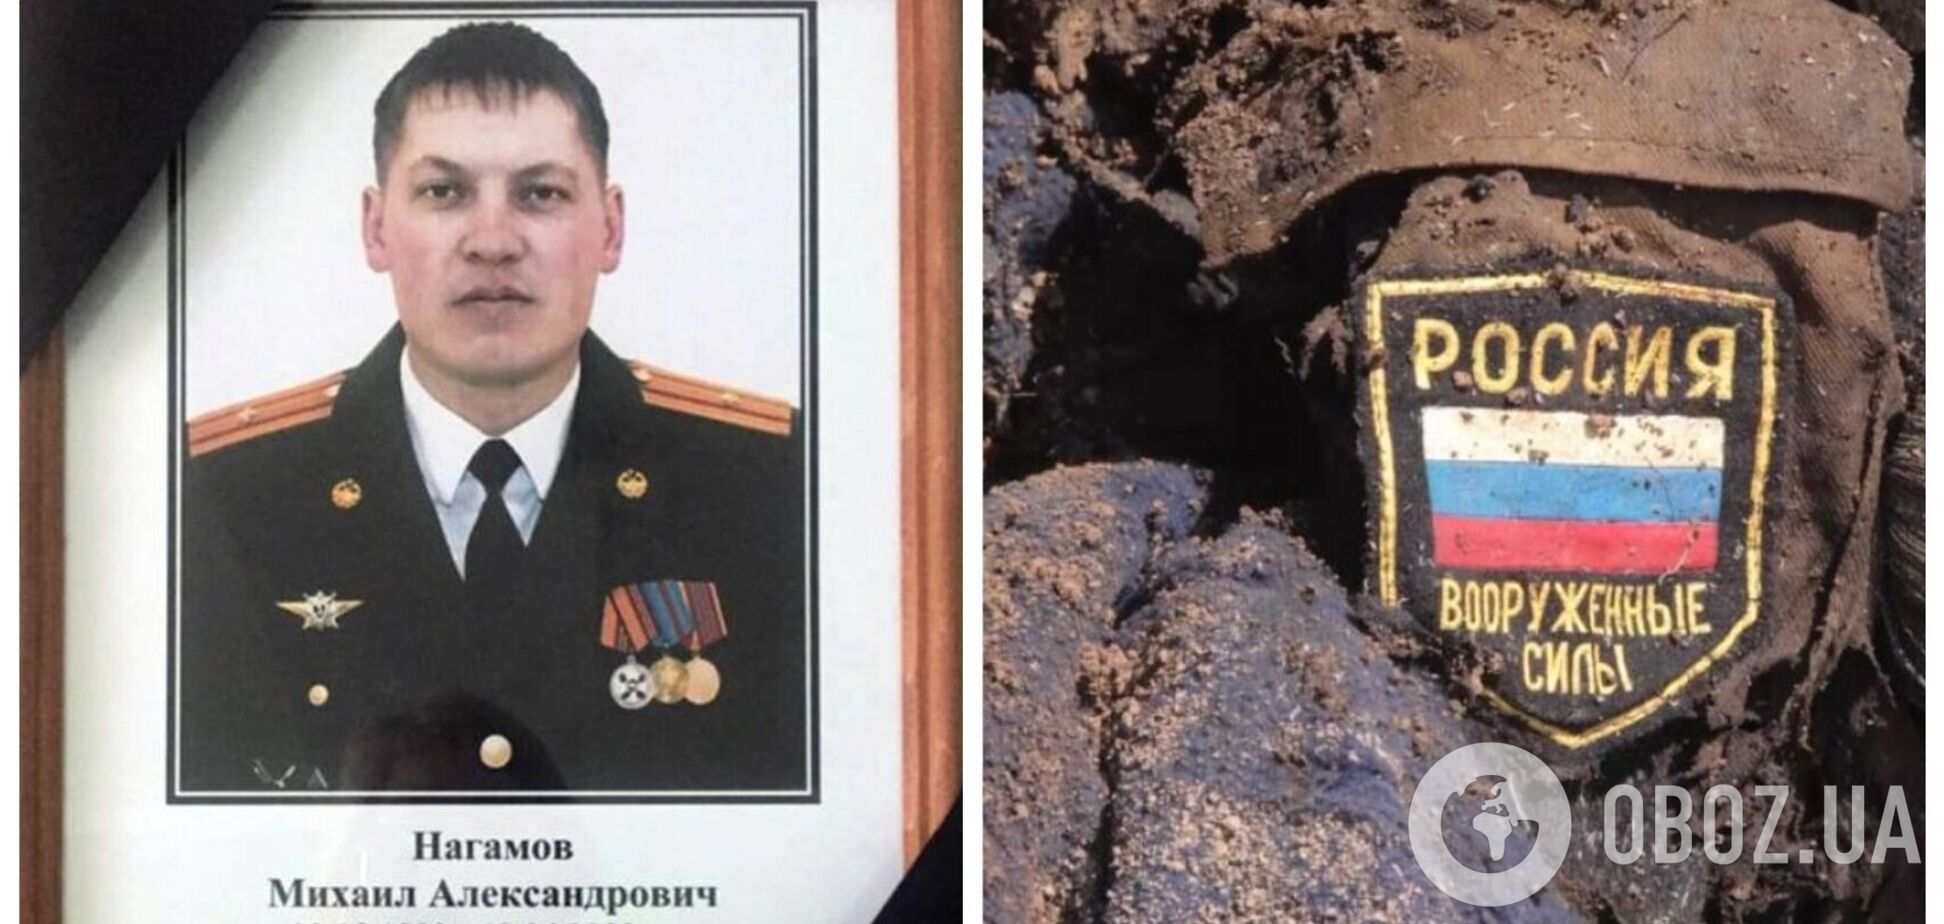 ВСУ ликвидировали еще одного российского полковника. Фото